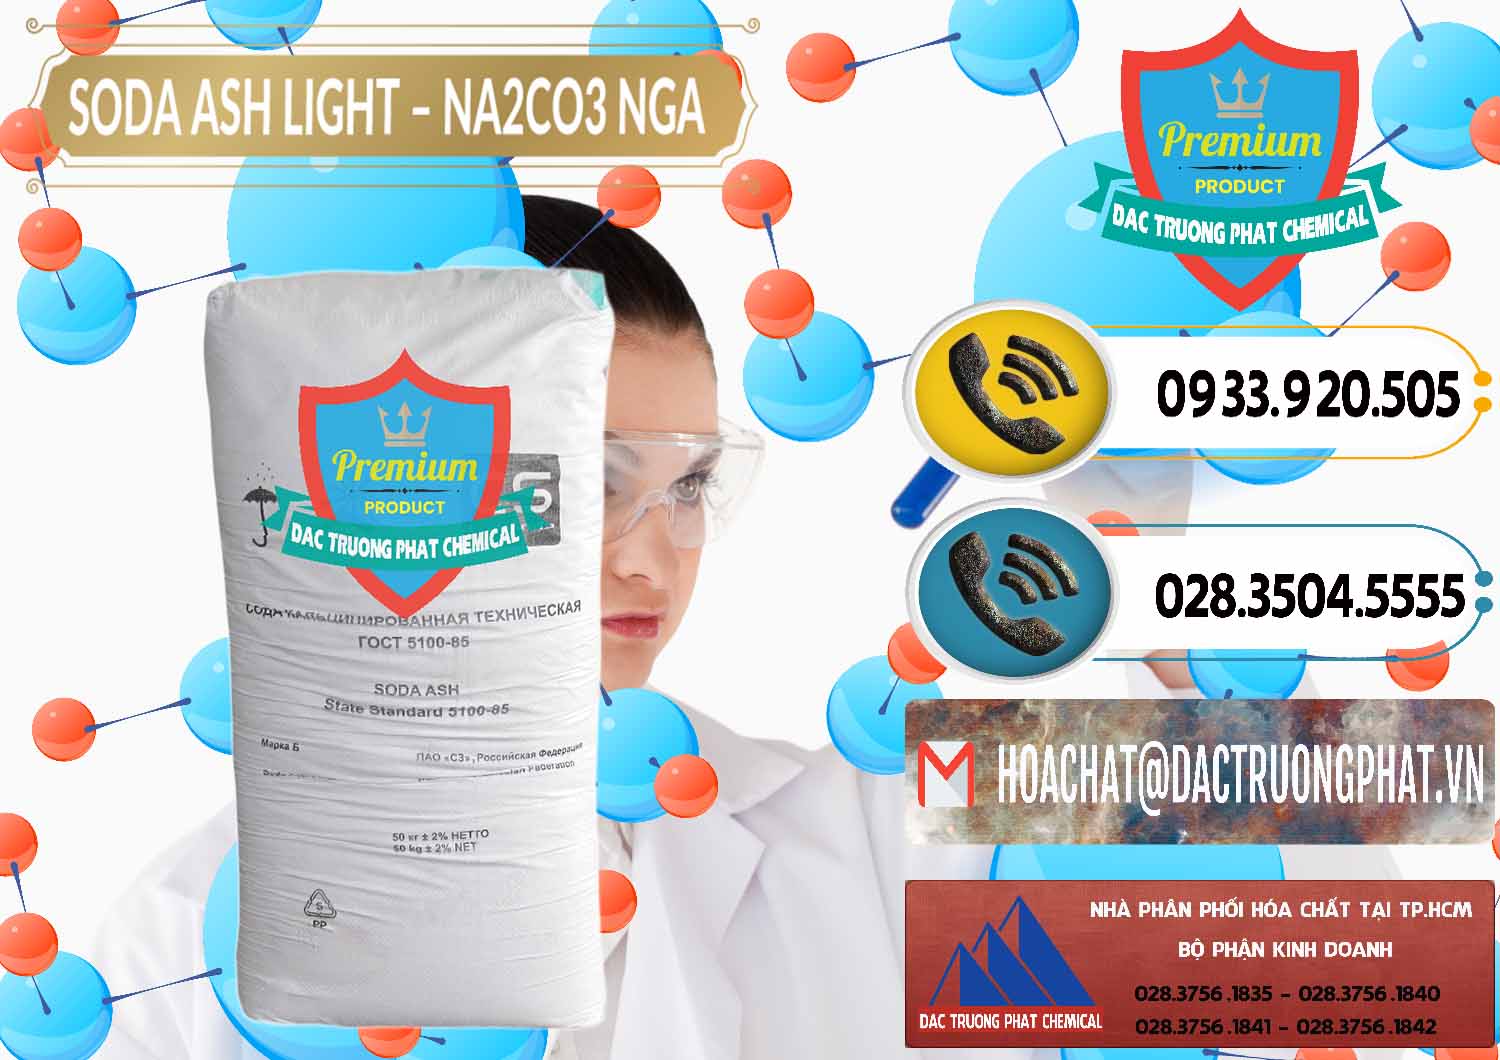 Chuyên bán _ cung cấp Soda Ash Light - NA2CO3 Nga Russia - 0128 - Công ty bán _ phân phối hóa chất tại TP.HCM - hoachatdetnhuom.vn